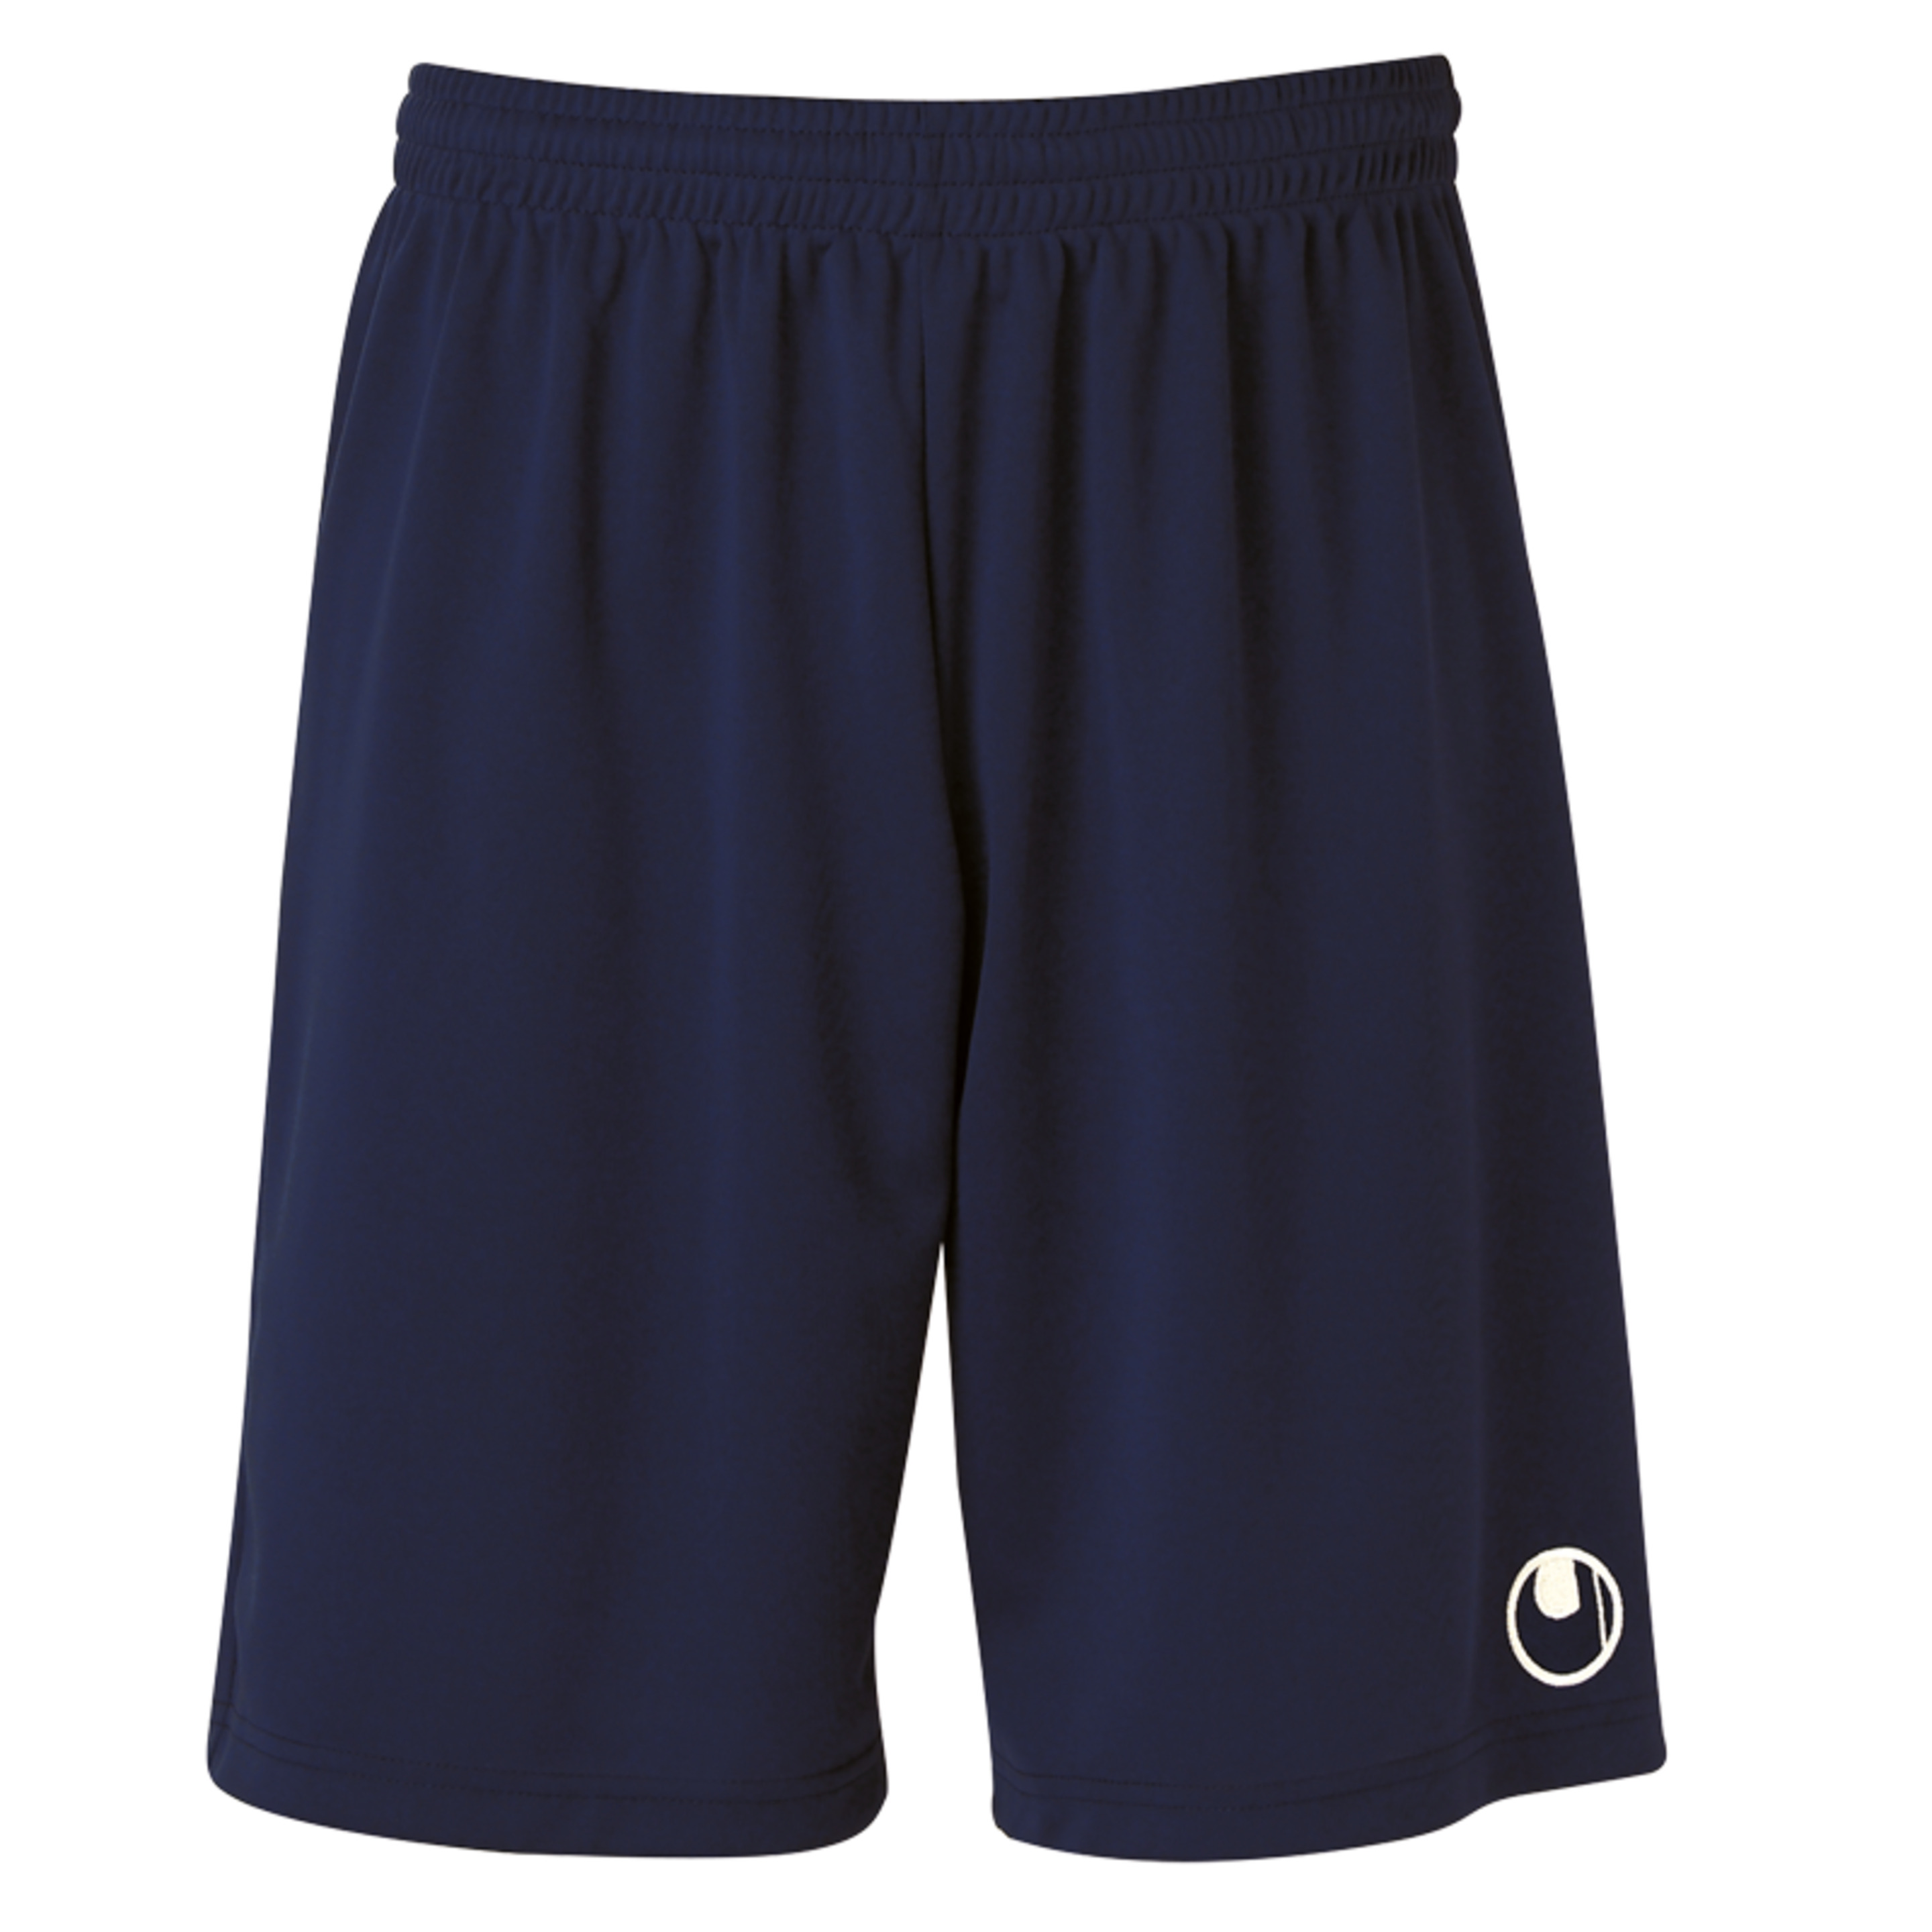 Center Ii Shorts With Slip Inside Azul Marino Uhlsport